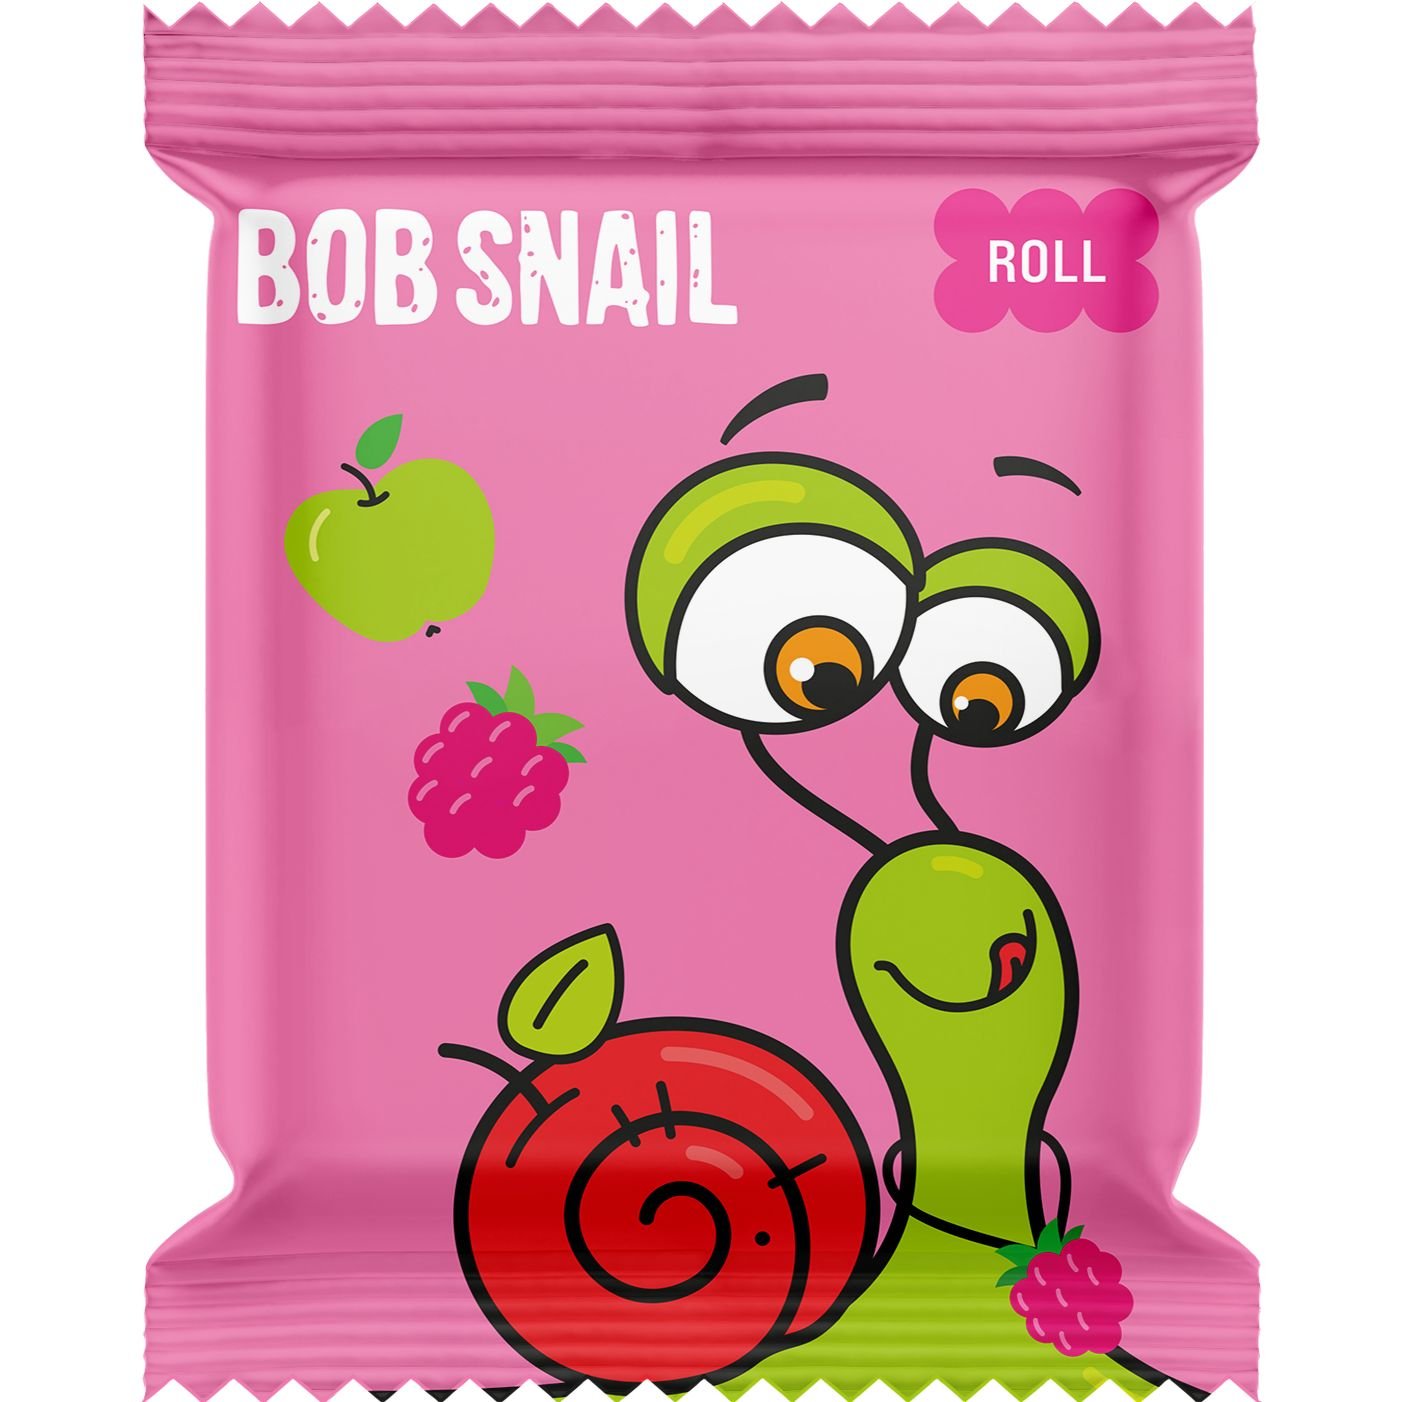 Фруктовые яблочно-малиновые конфеты Bob Snail 100 г (10 шт. х 10 г) - фото 2